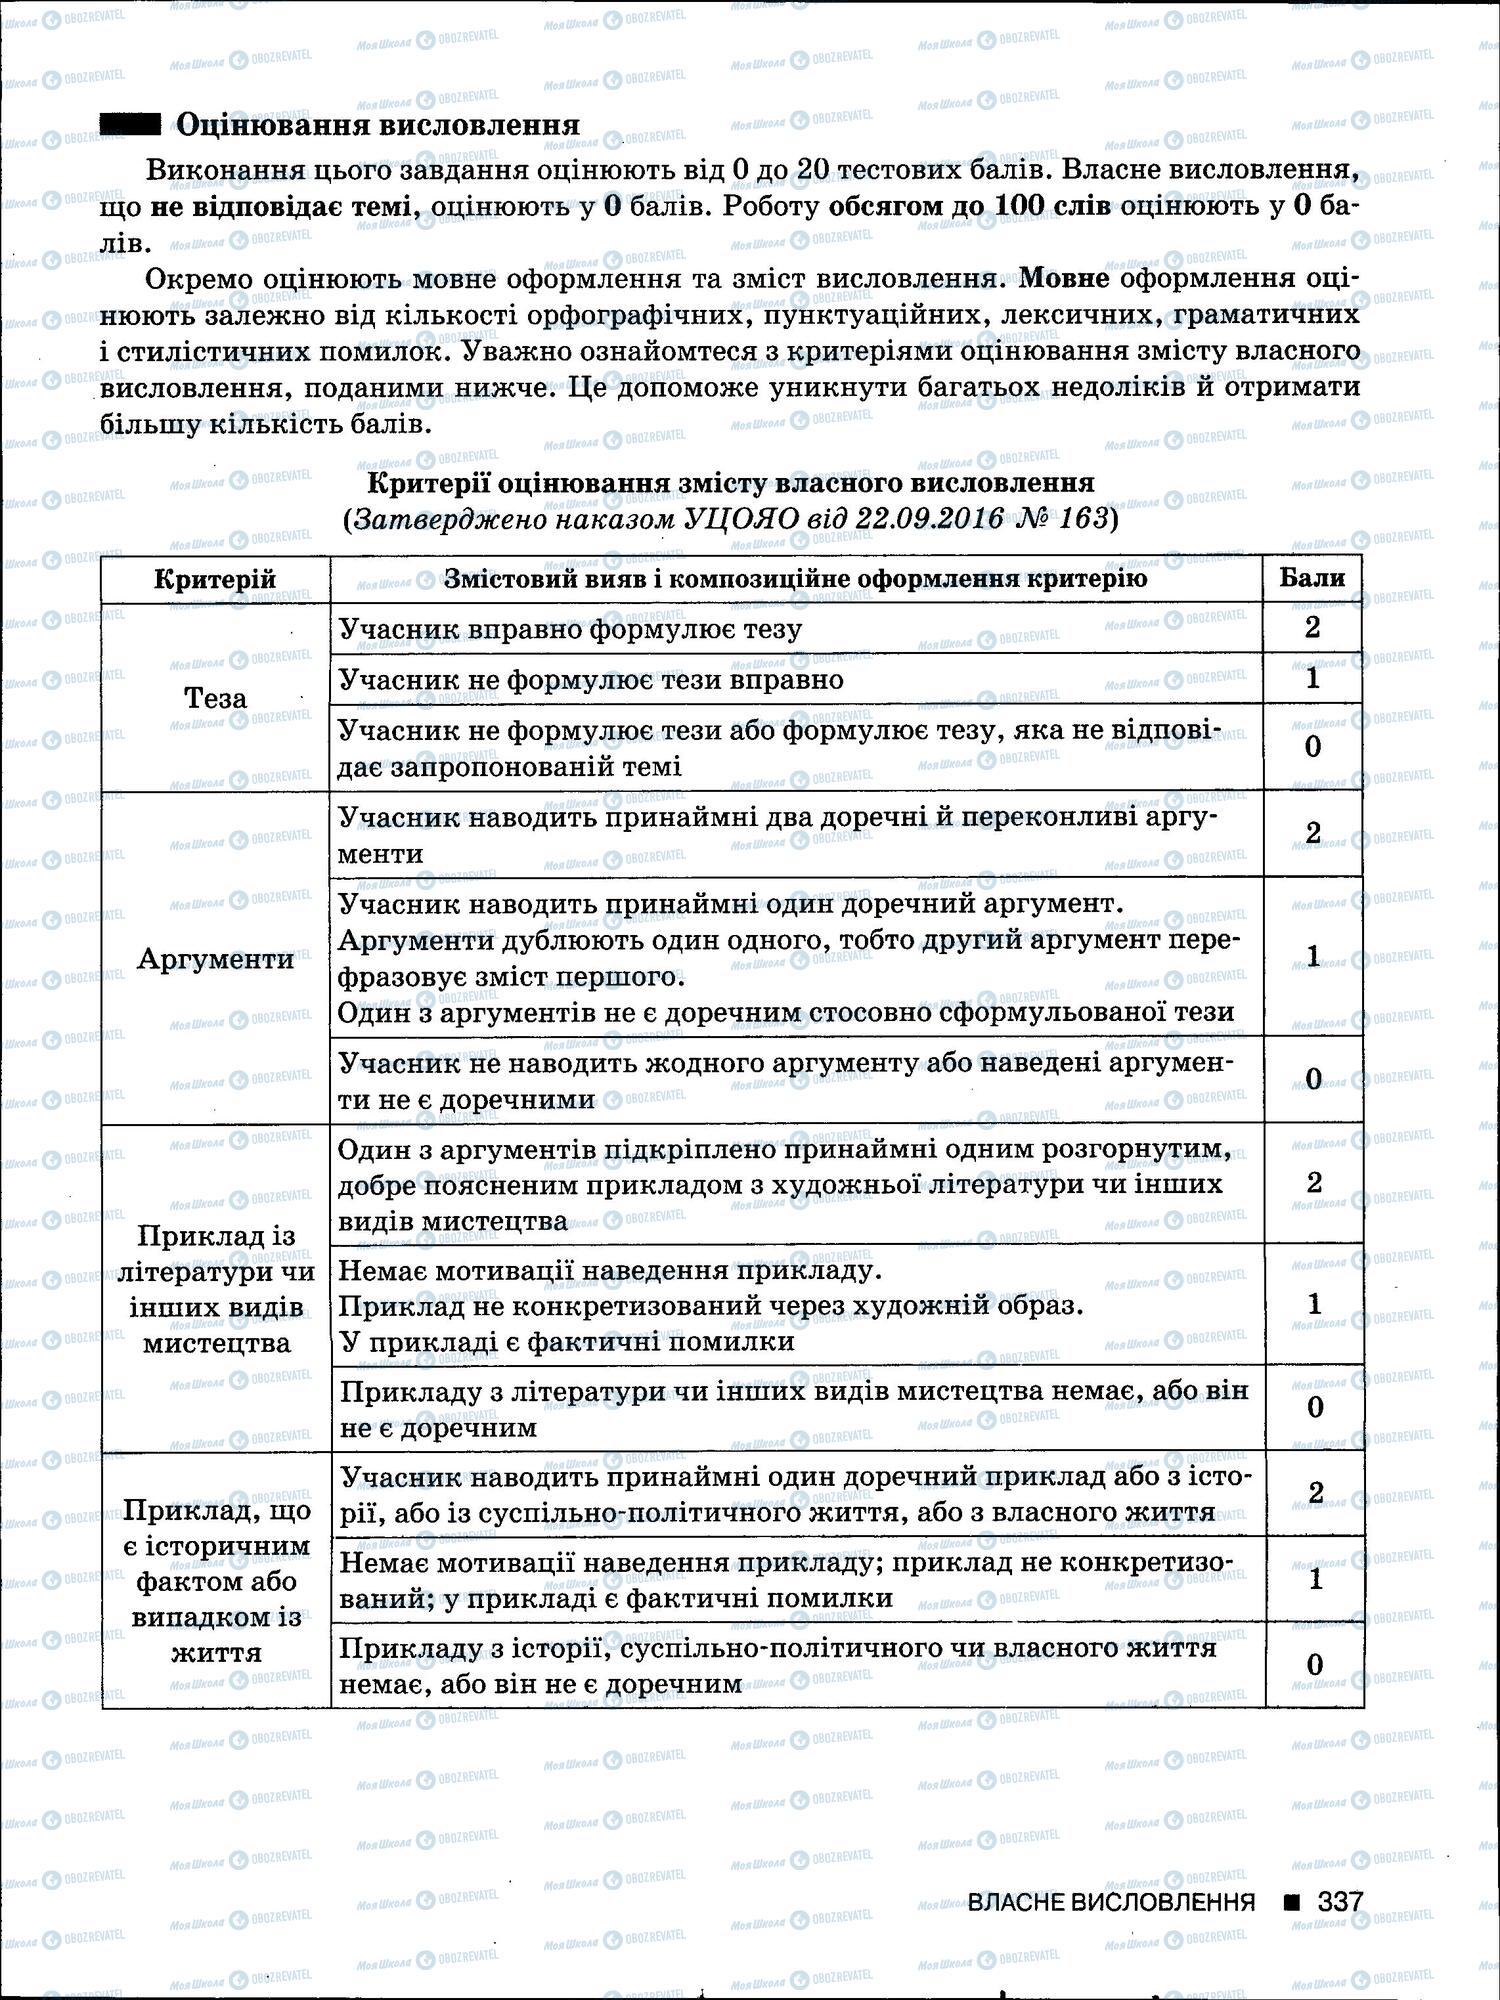 ЗНО Укр мова 11 класс страница 335